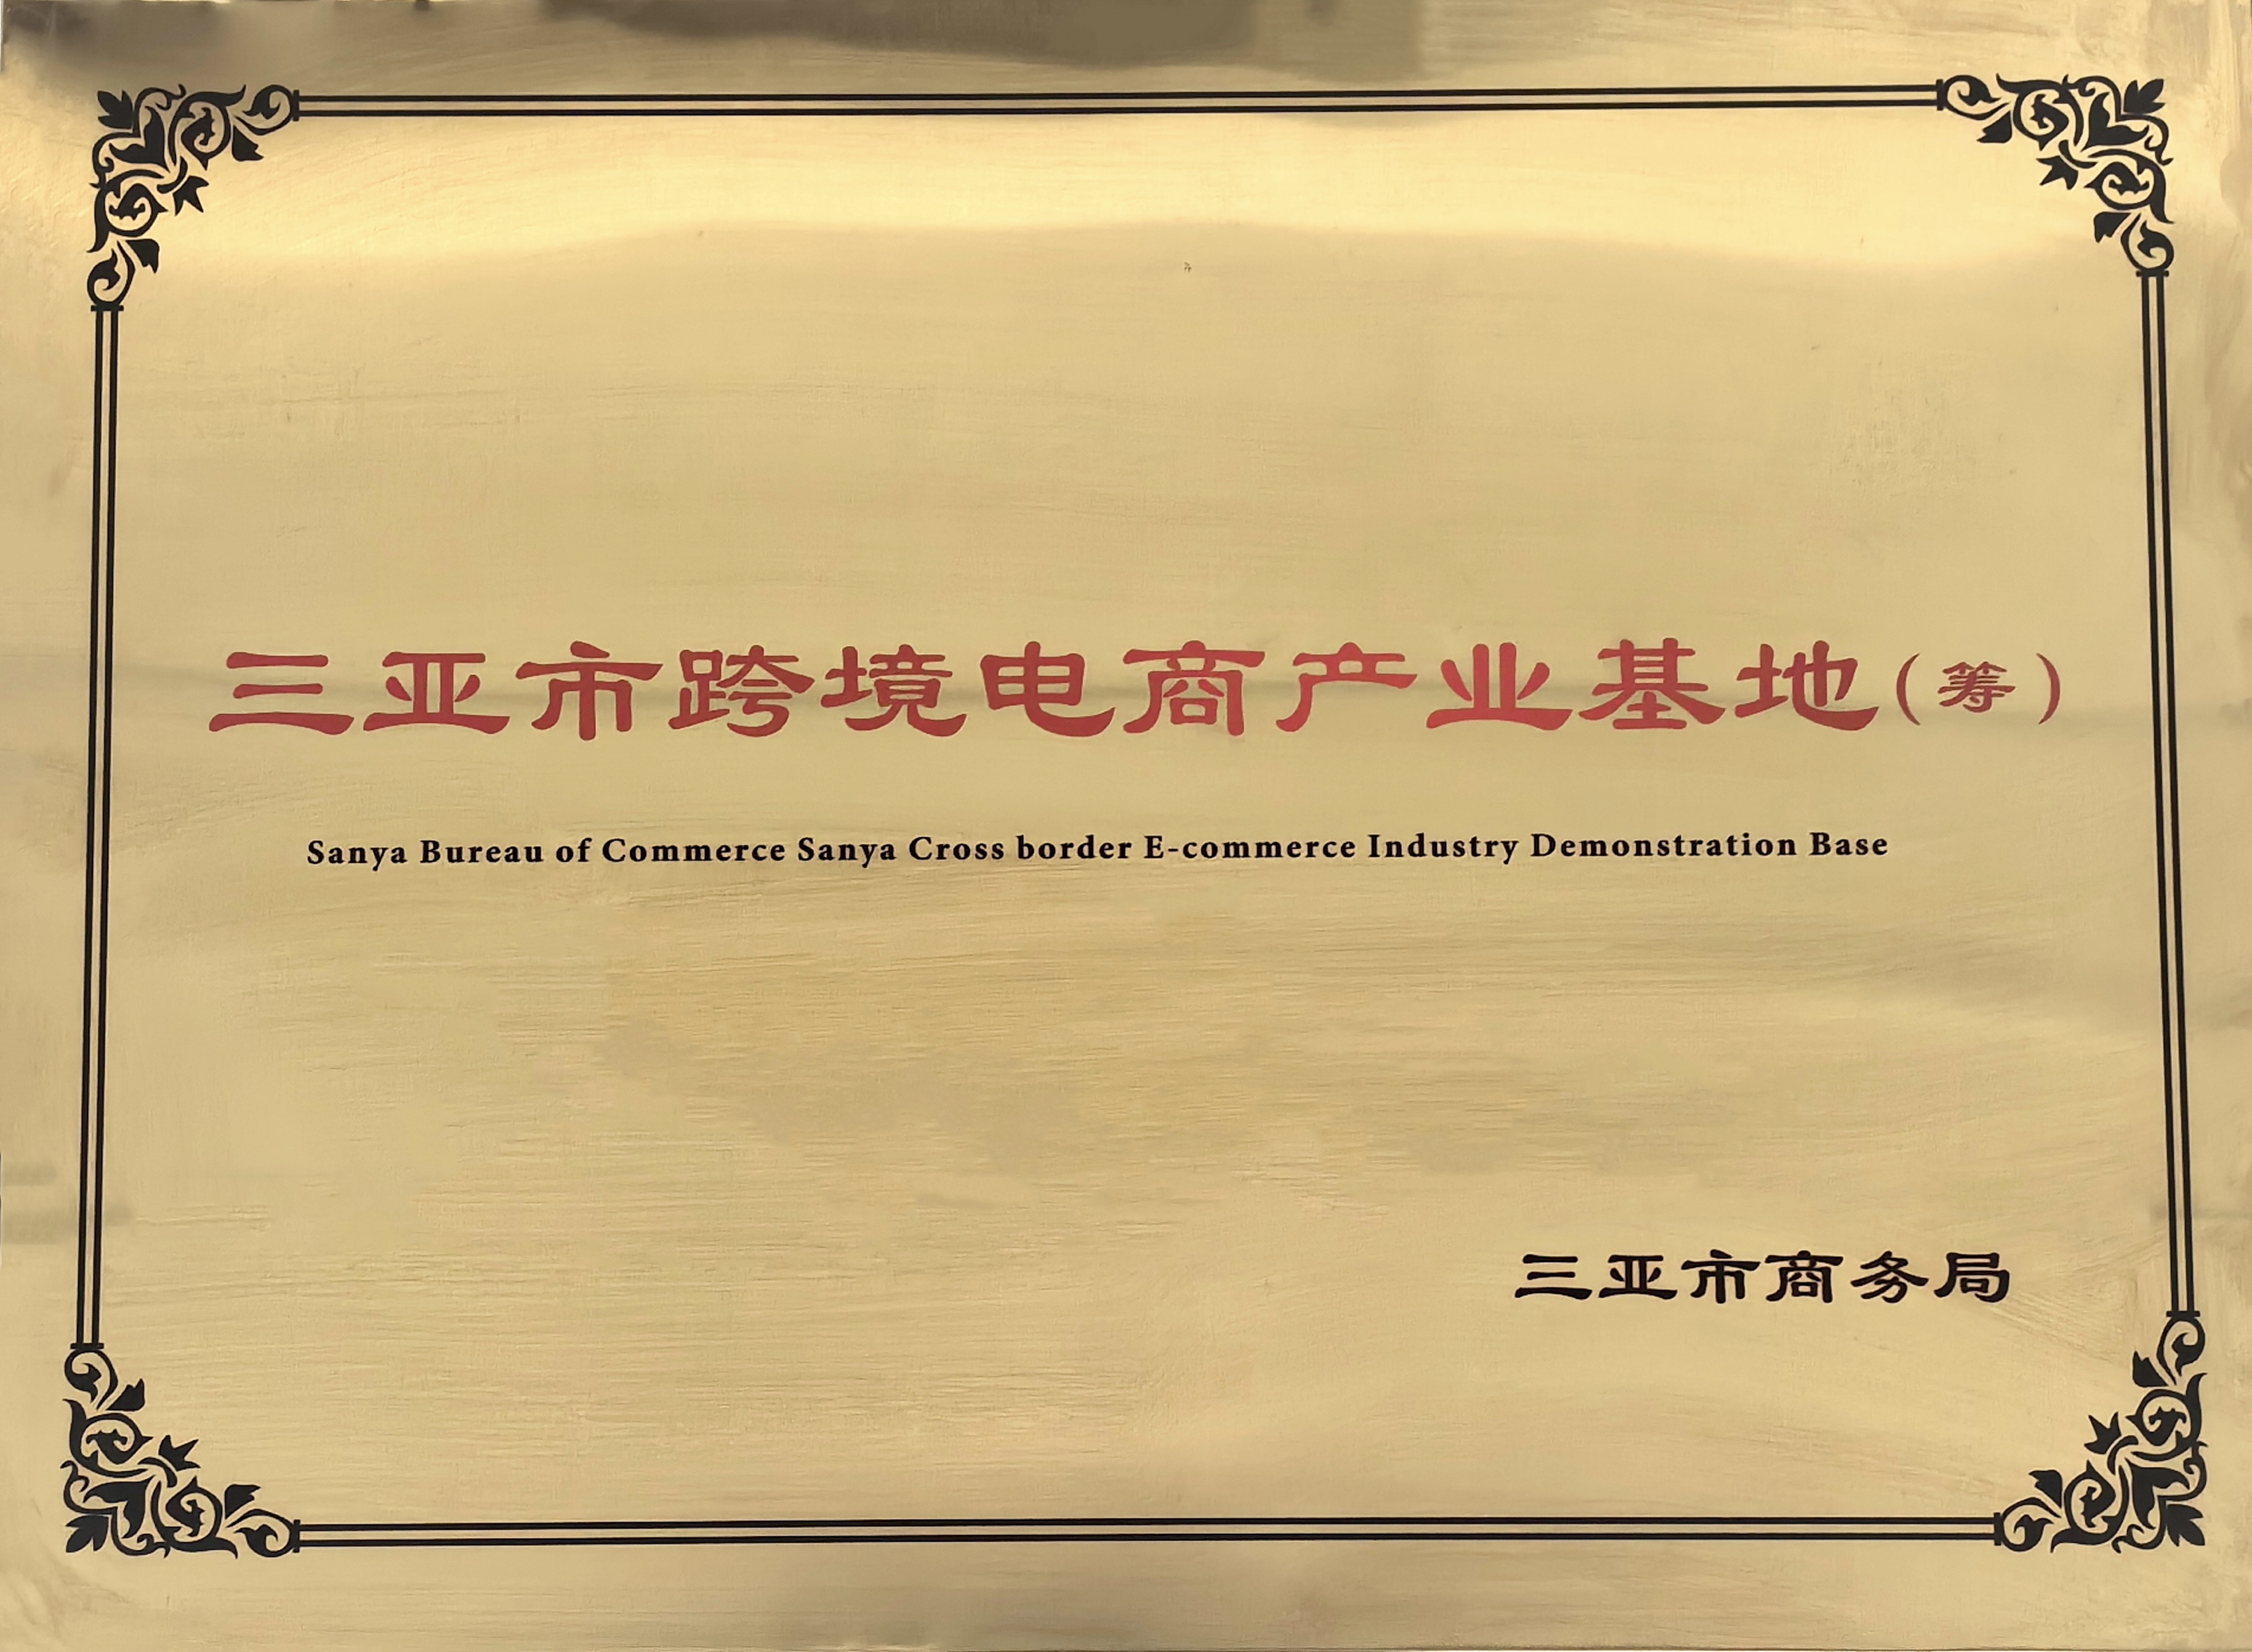 三亚凤凰机场保税物流有限公司被授予“三亚市跨境电商产业基地(筹)”牌匾